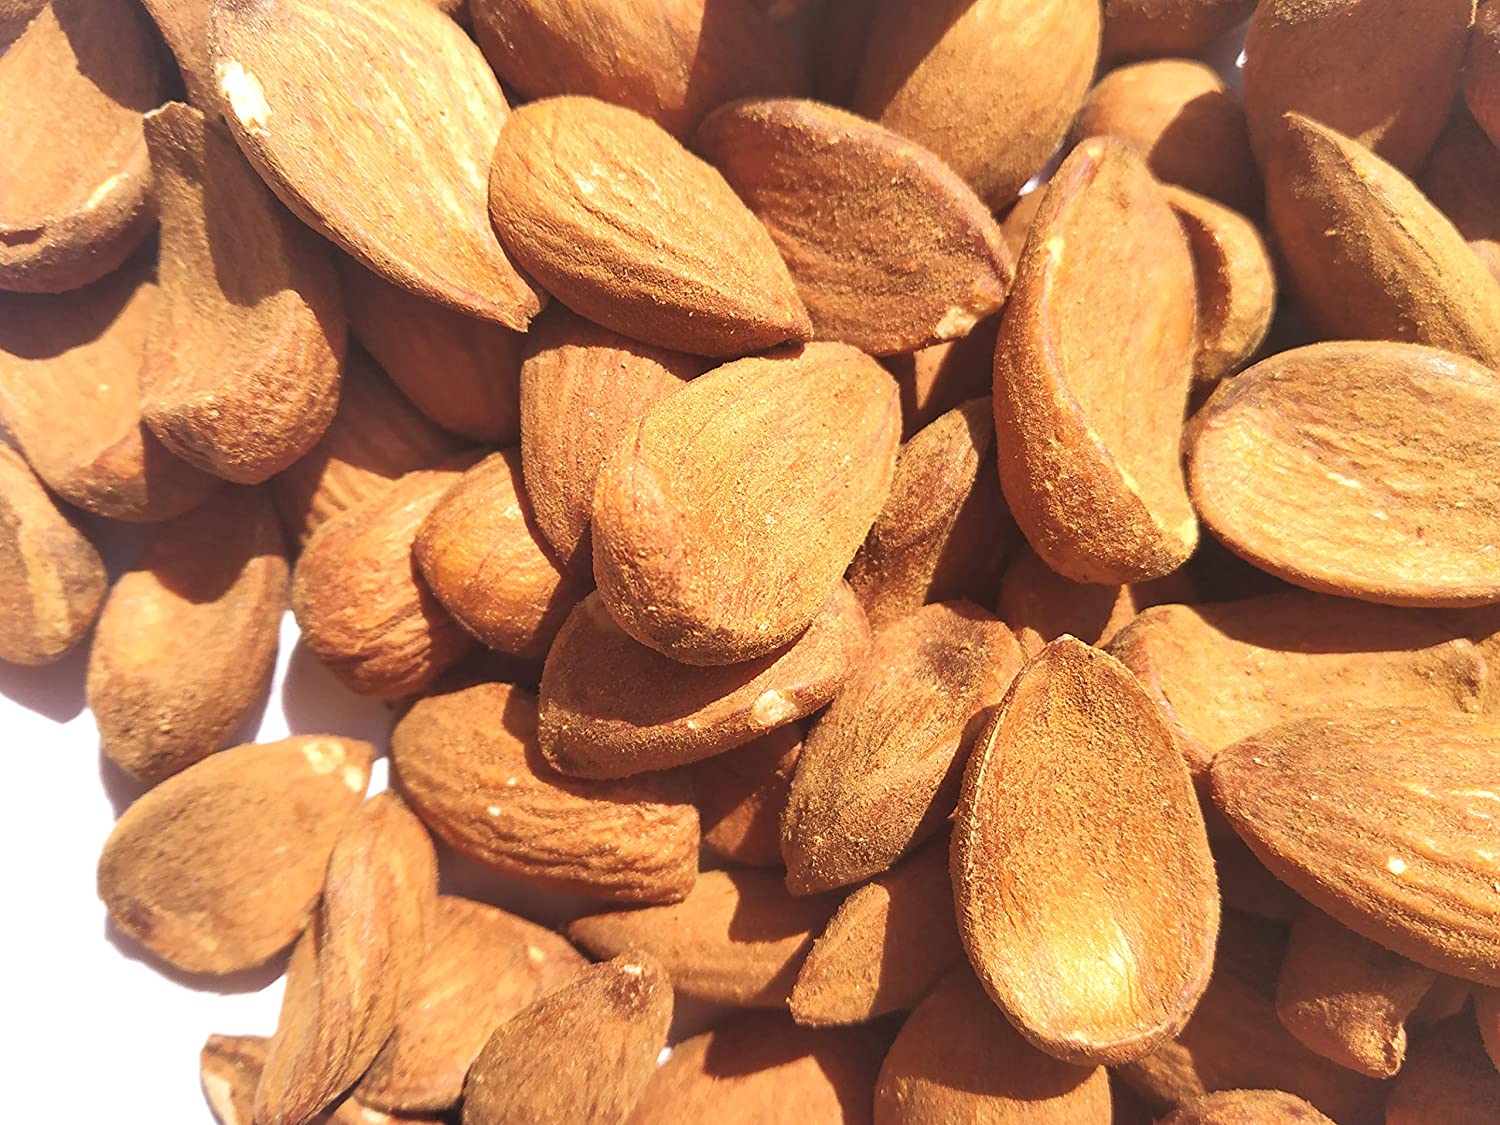 Wholesale Iranian Mamra almonds